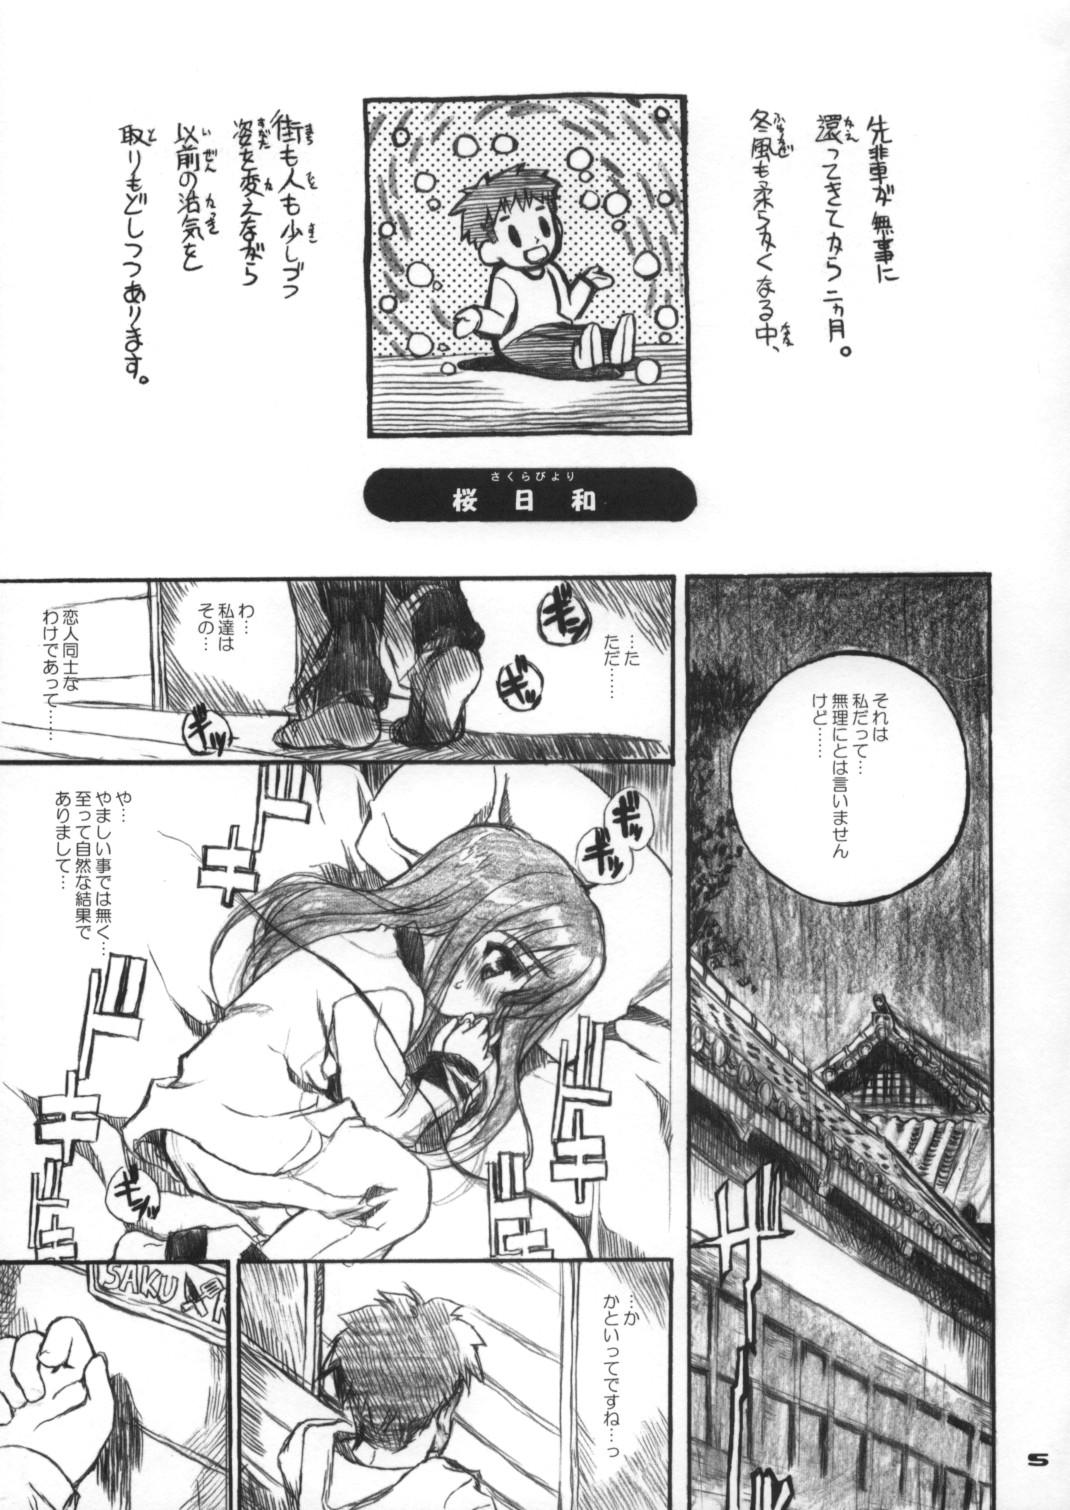 Safadinha Neko-bus Tei no Hon Vol.6 Sakurabiyori - Fate stay night Tease - Page 4